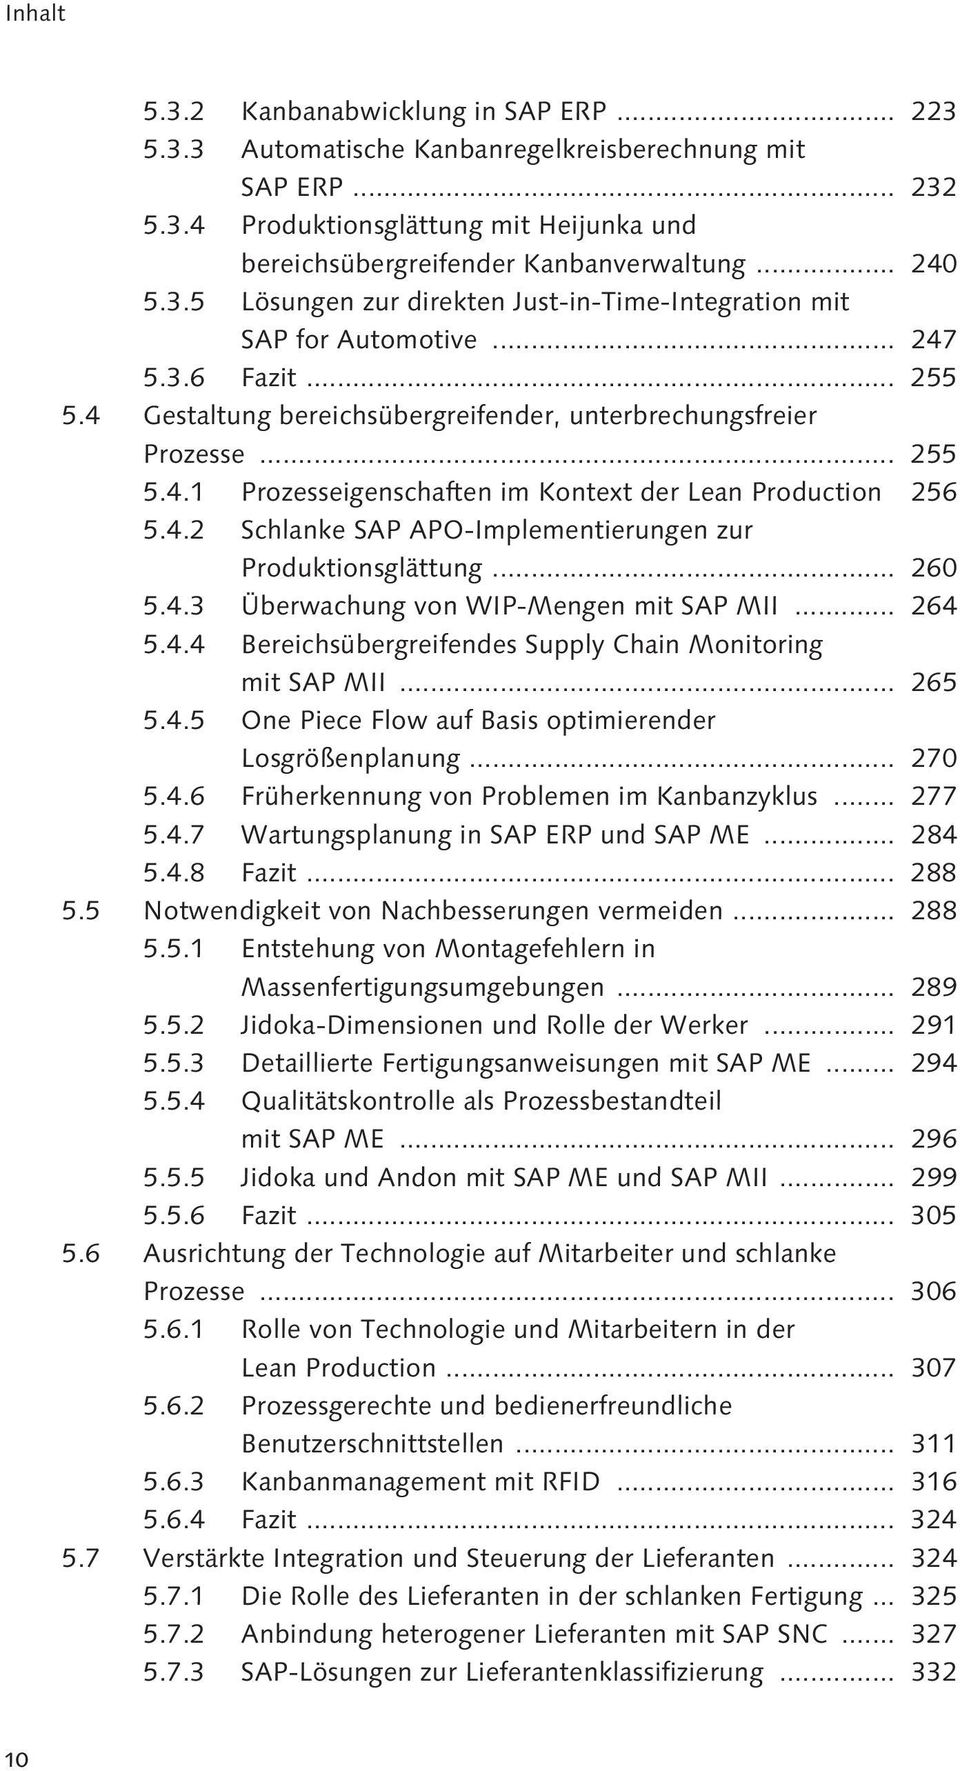 .. 260 5.4.3 Überwachung von WIP-Mengen mit SAP MII... 264 5.4.4 Bereichsübergreifendes Supply Chain Monitoring mit SAP MII... 265 5.4.5 One Piece Flow auf Basis optimierender Losgrößenplanung... 270 5.